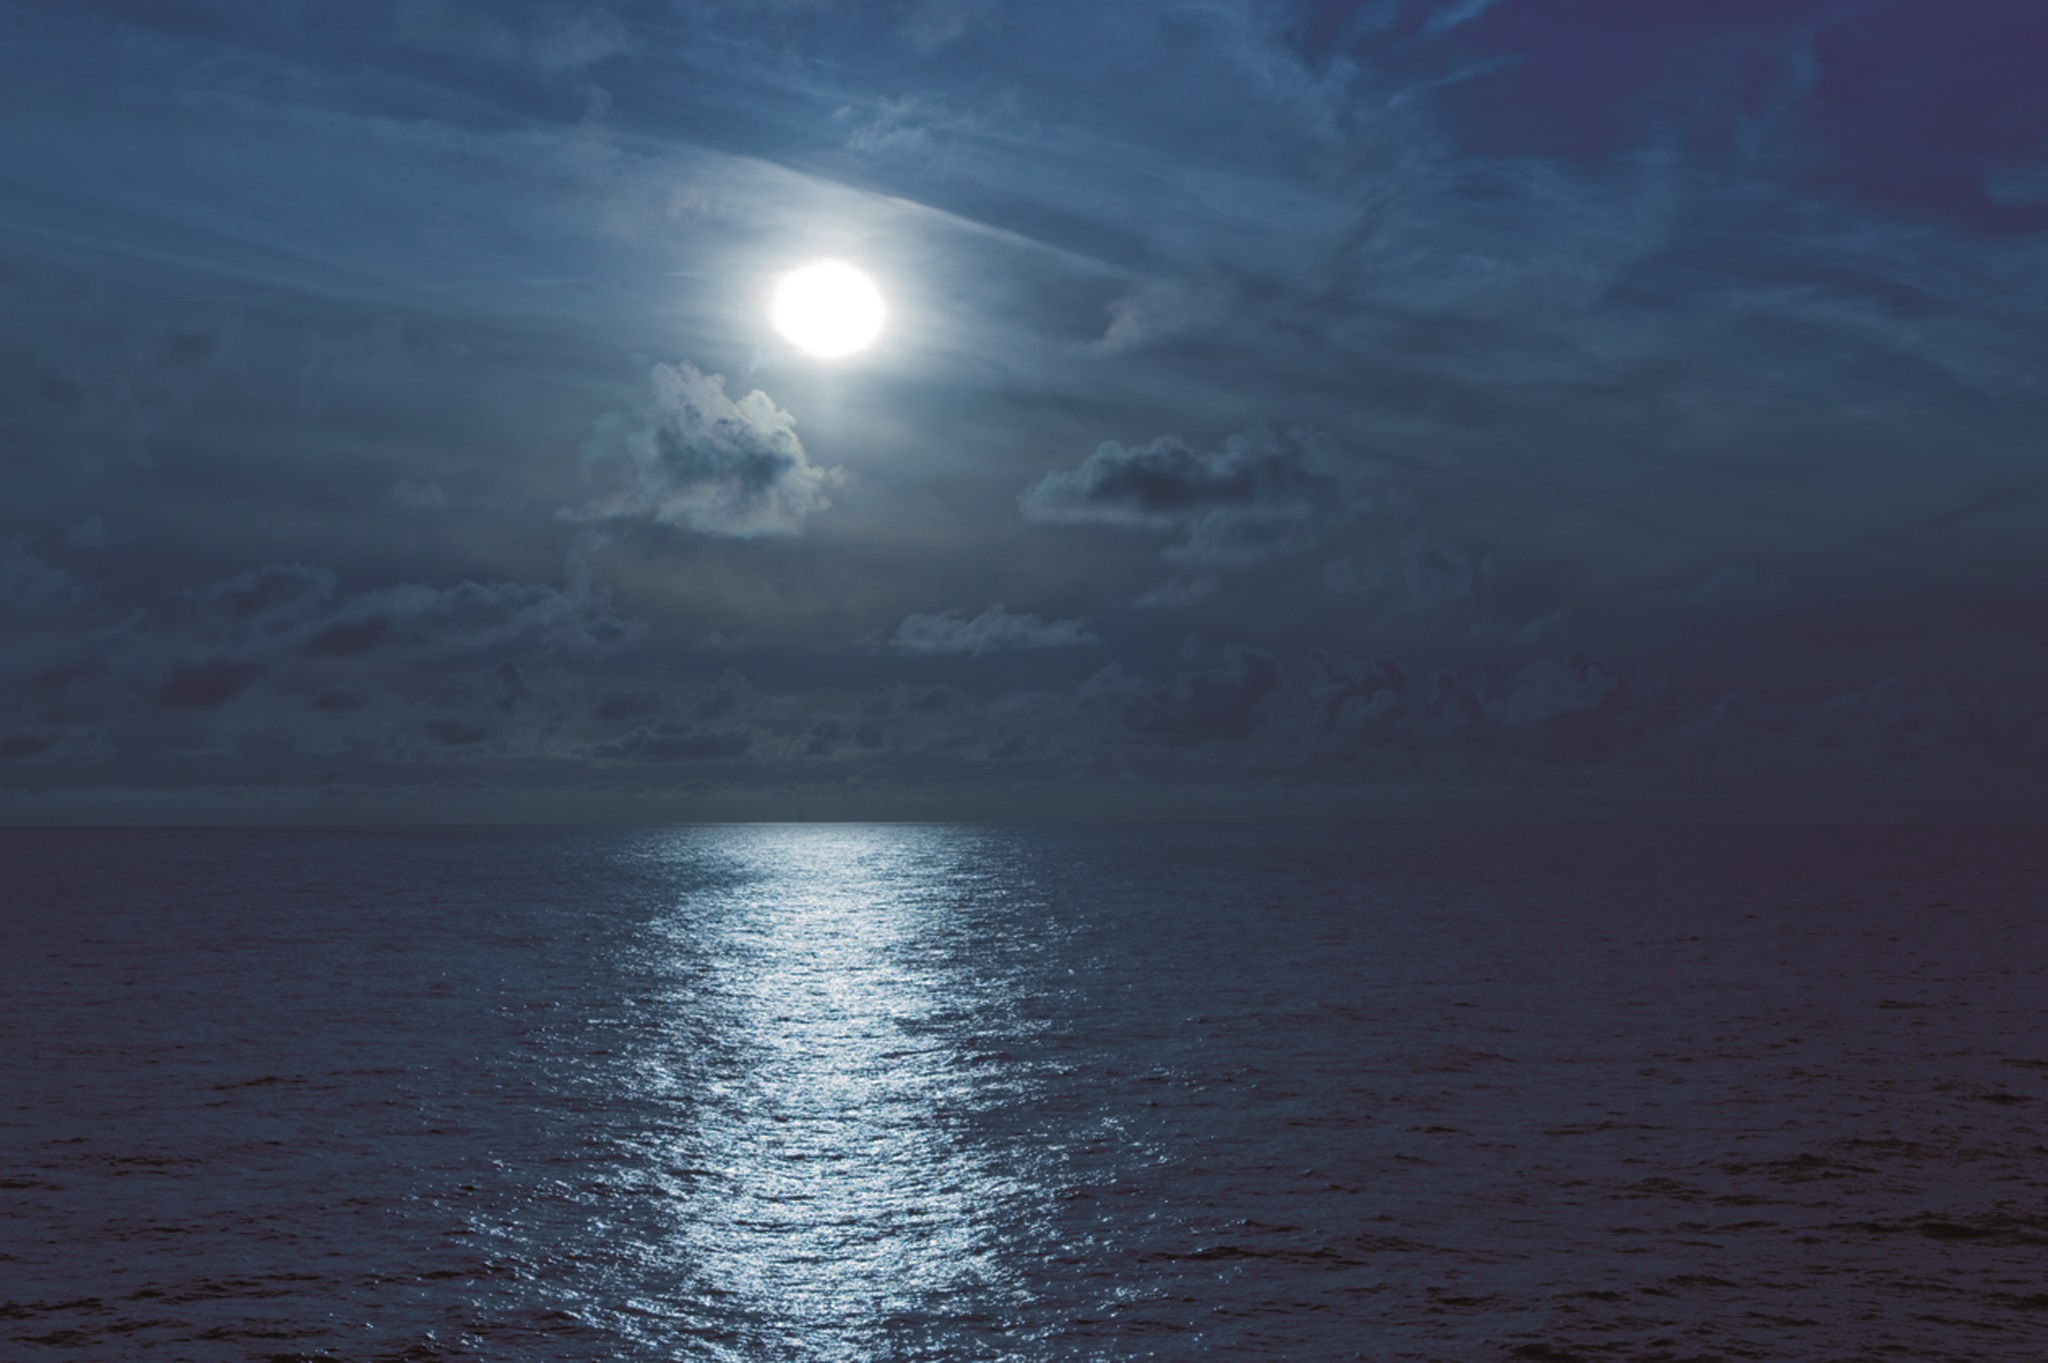 Moon over sea